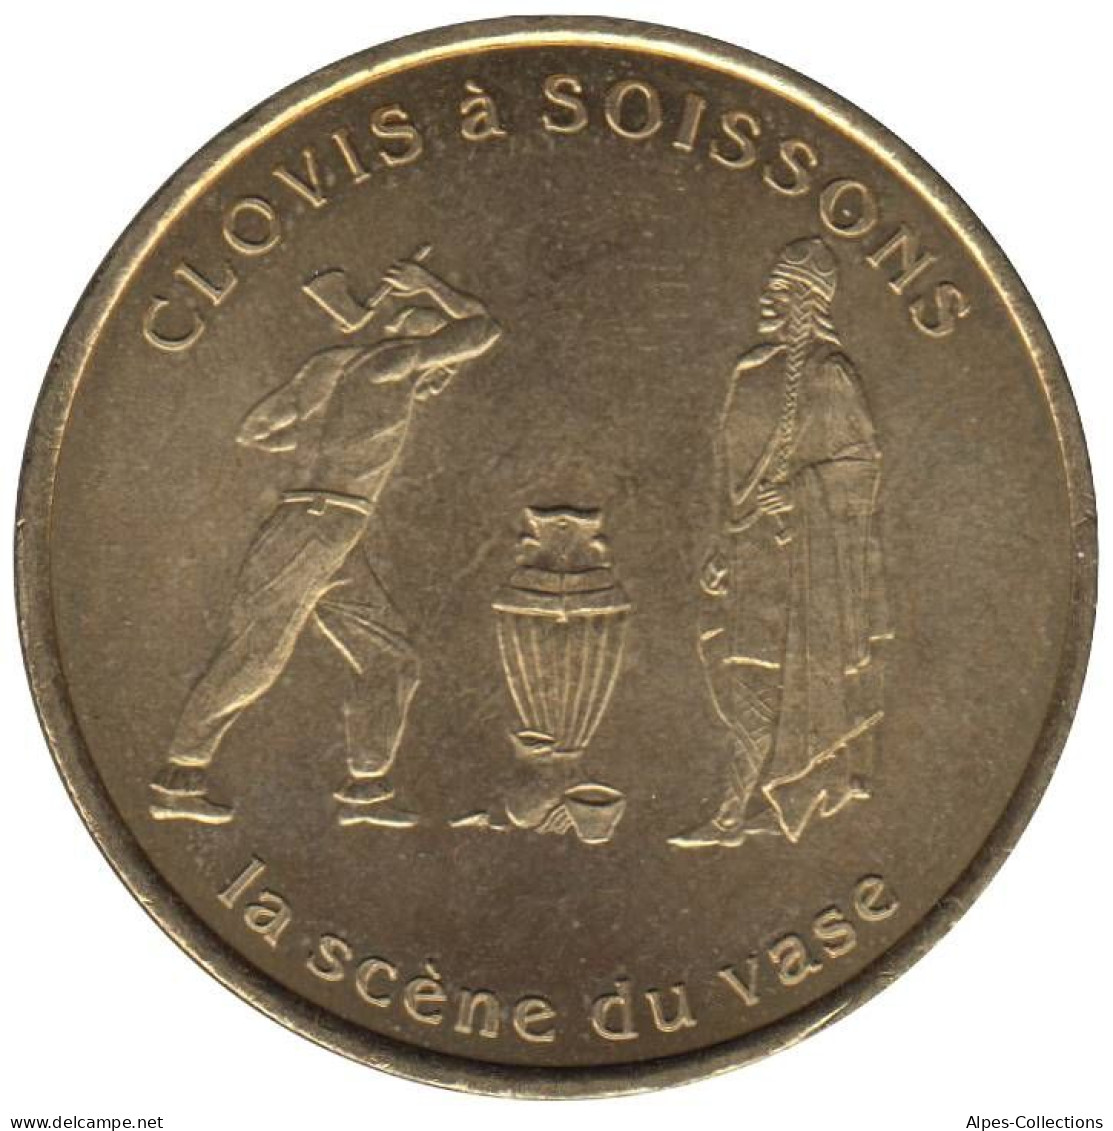 SOISSONS - EU0010.2 - 1 EURO DES VILLES - Réf: T391 - 1997 - Euro Der Städte